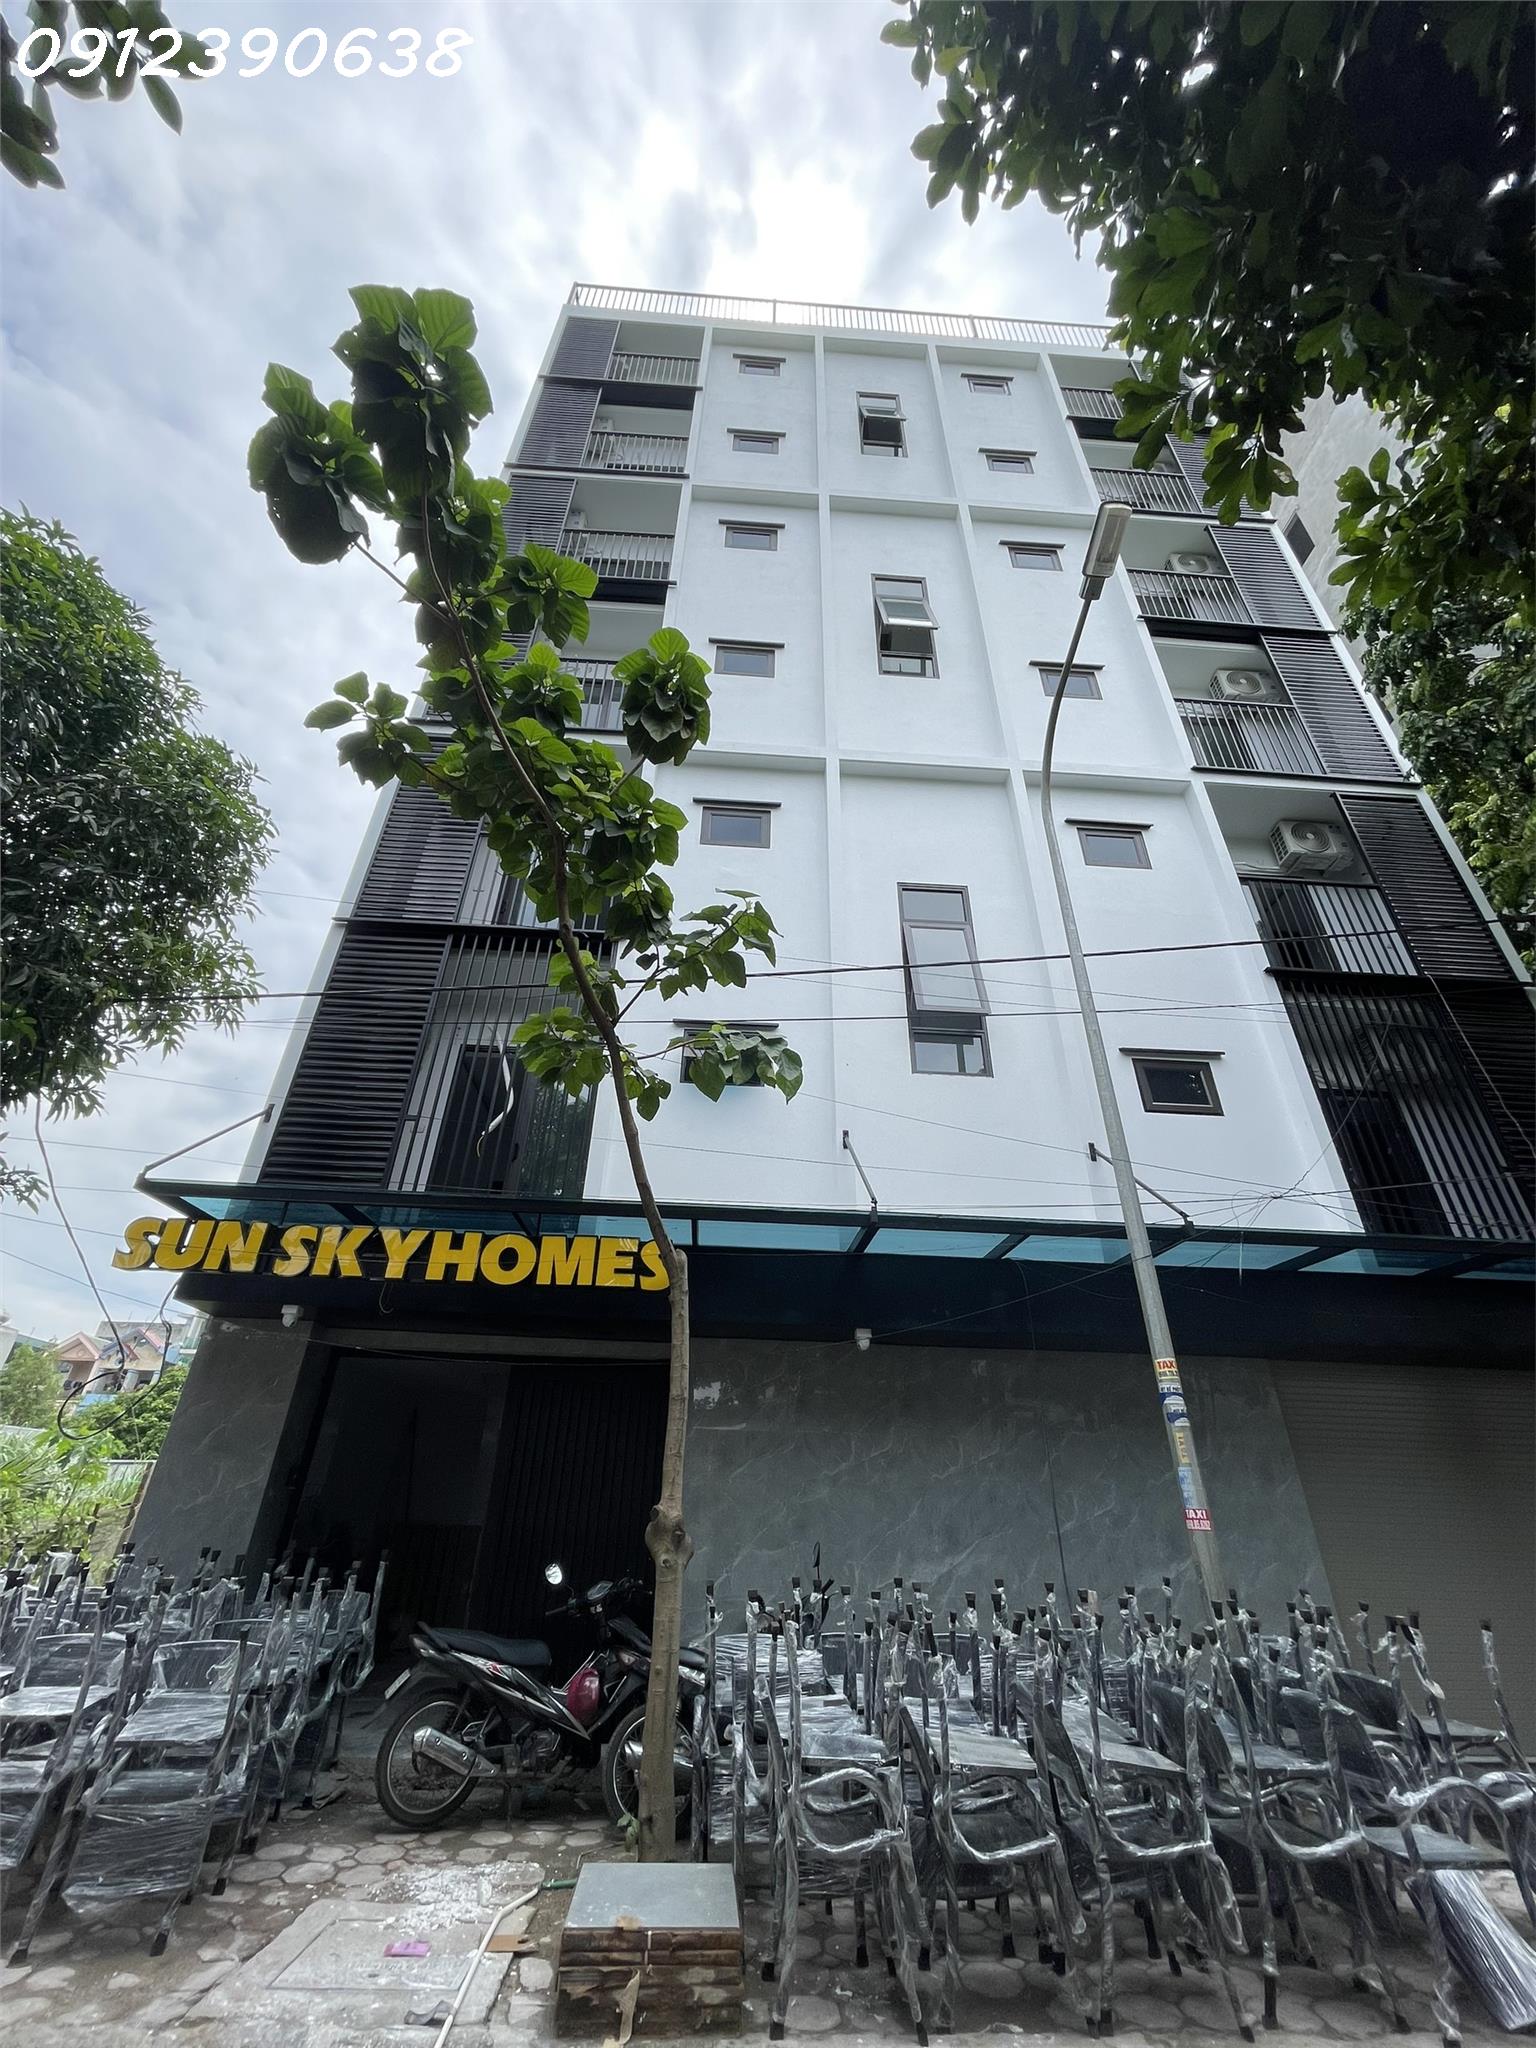 CHO THUÊ PHÒNG Chính chủ có hệ thống nhà trọ sinh viên Skyhomes Hòa Lạc FPT có phòng DT từ 26m tới 30m2